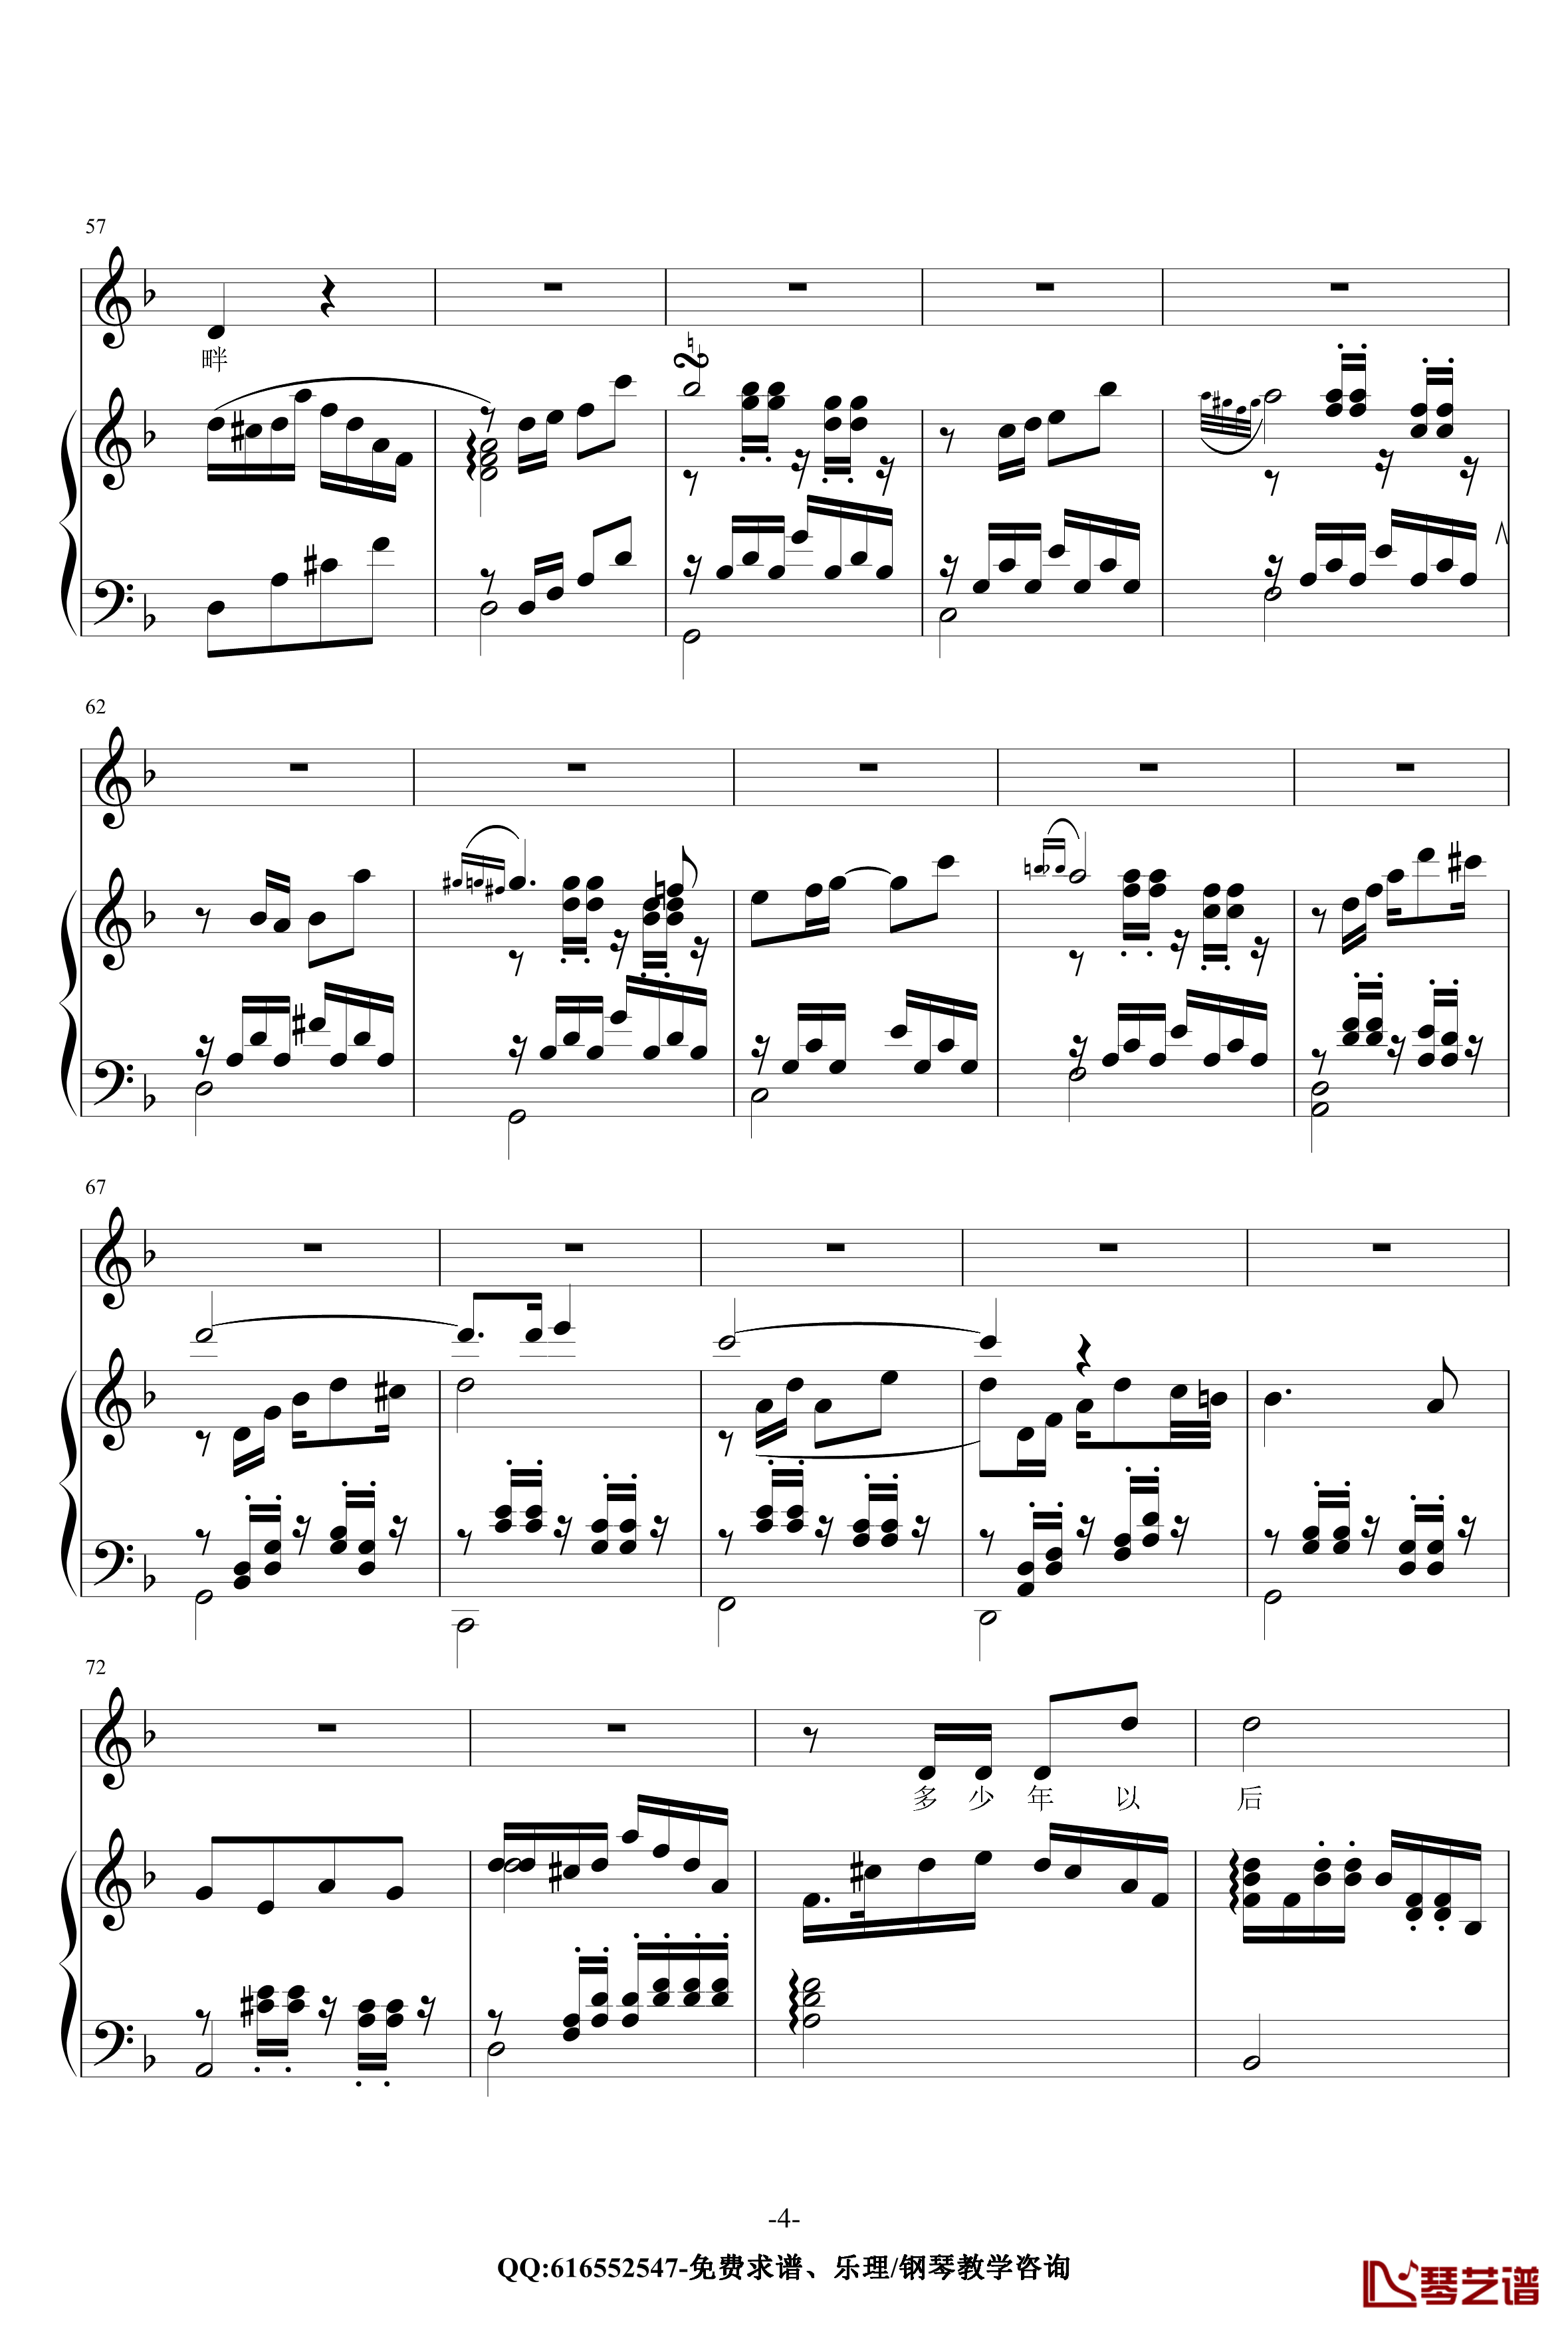 贝加尔湖畔钢琴谱-金龙鱼原声伴奏版170616-李健